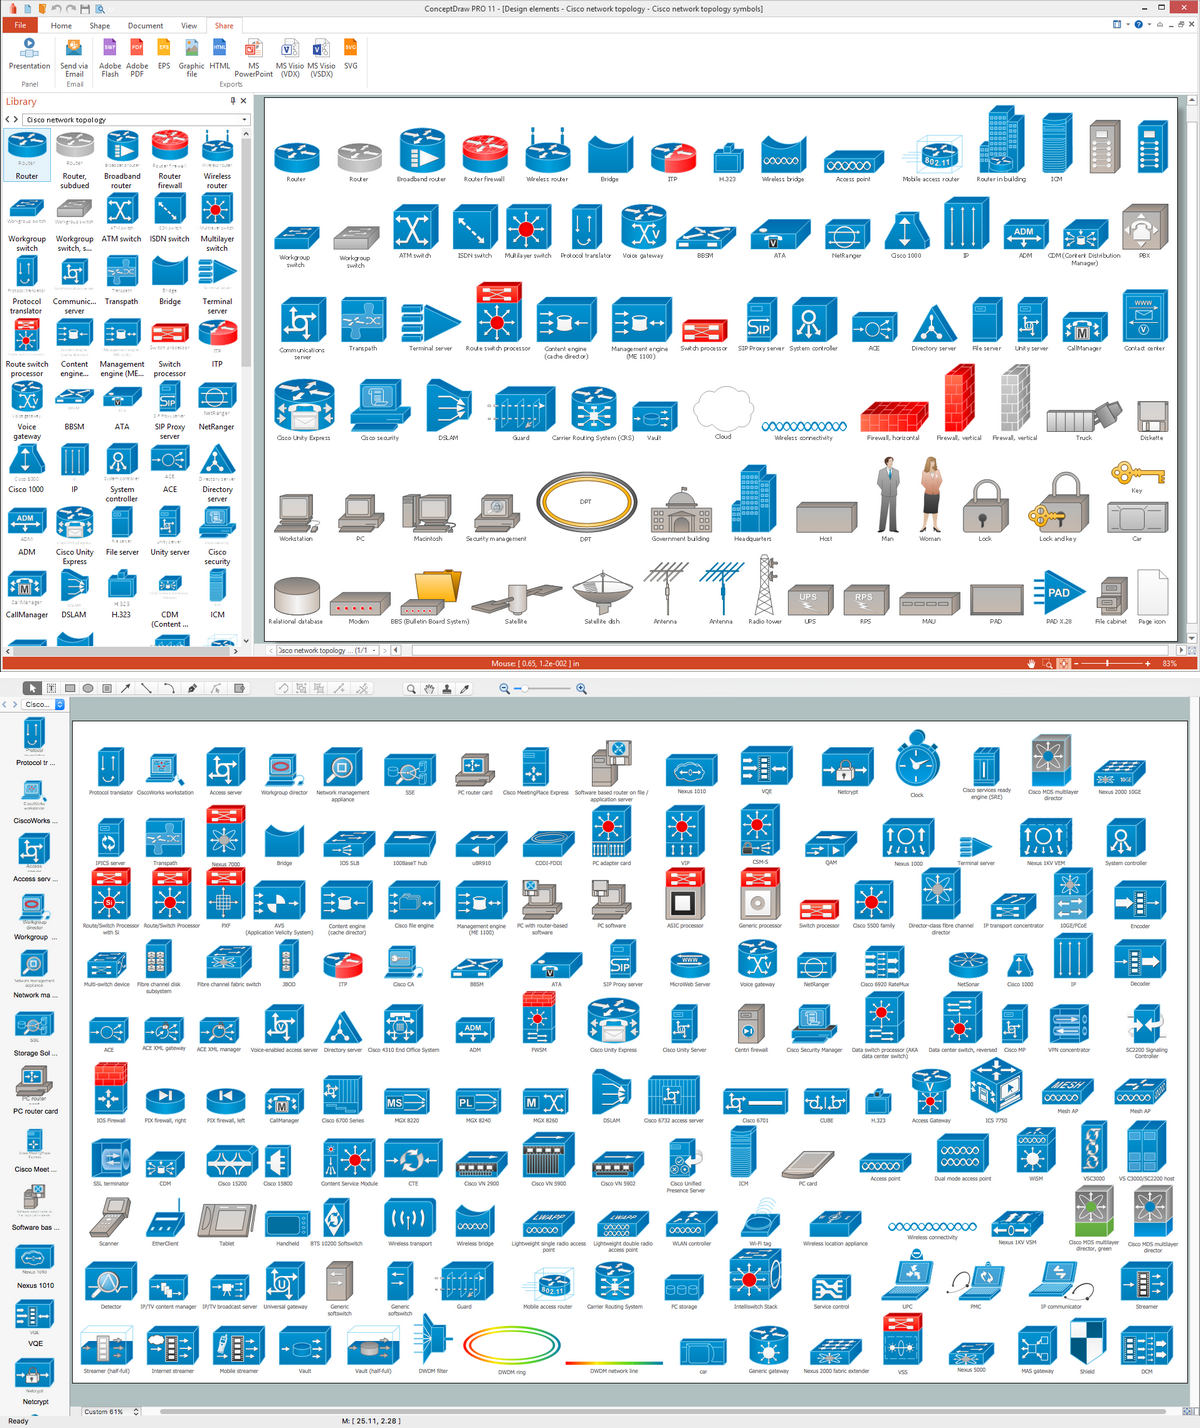 21 Auto Visio Network Diagram Stencils References